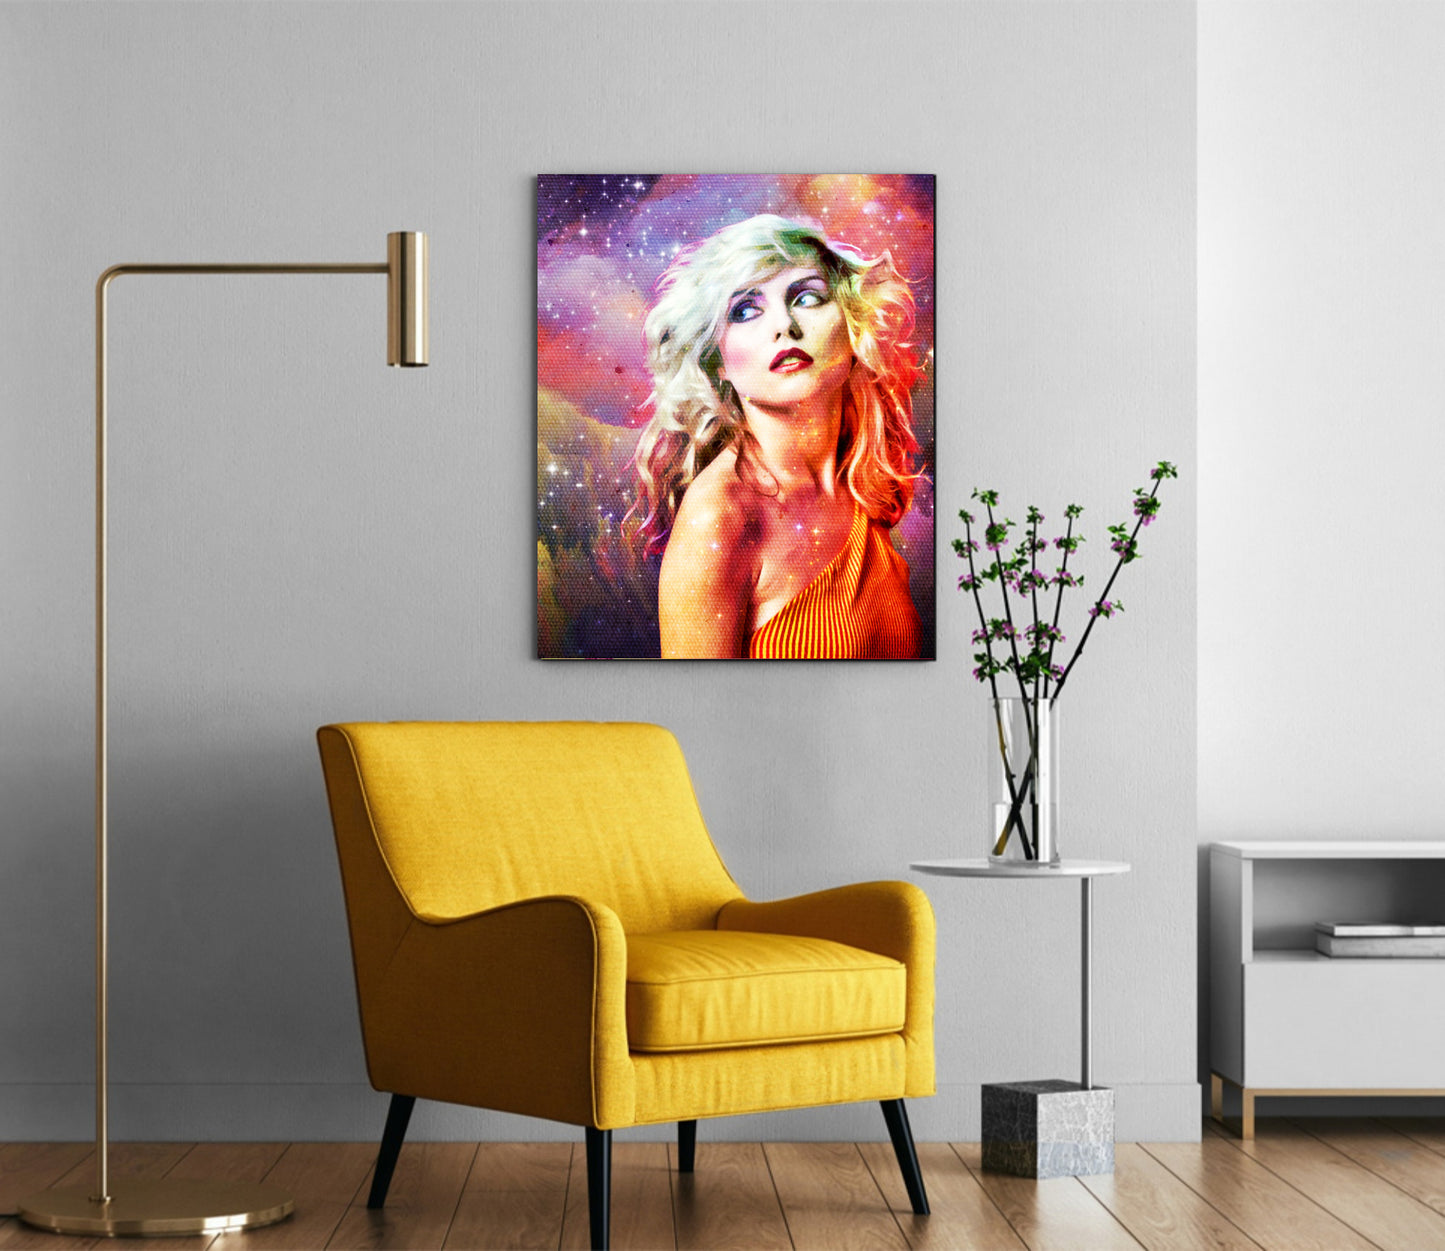 Blondie Debbie Harry wall art poster